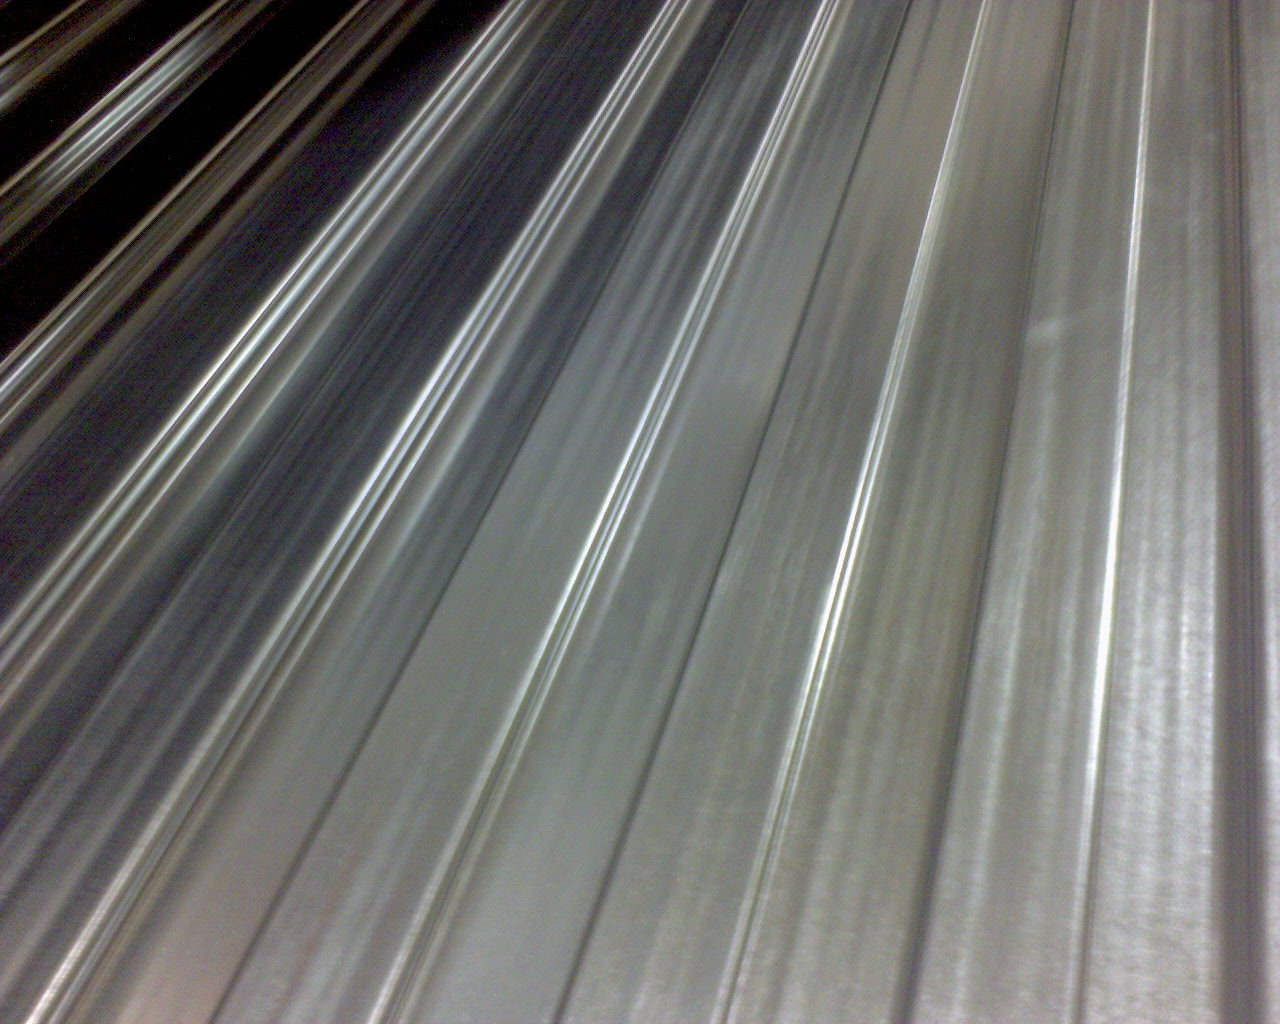 Ce profilé d'aluminium peut être utilisé pour la toiture, par exemple. La fine couche d'oxyde de l'aluminium le rend en effet résistant aux intempéries. © Rutger Middendorp, Flickr, CC by-nc-nd 2.0